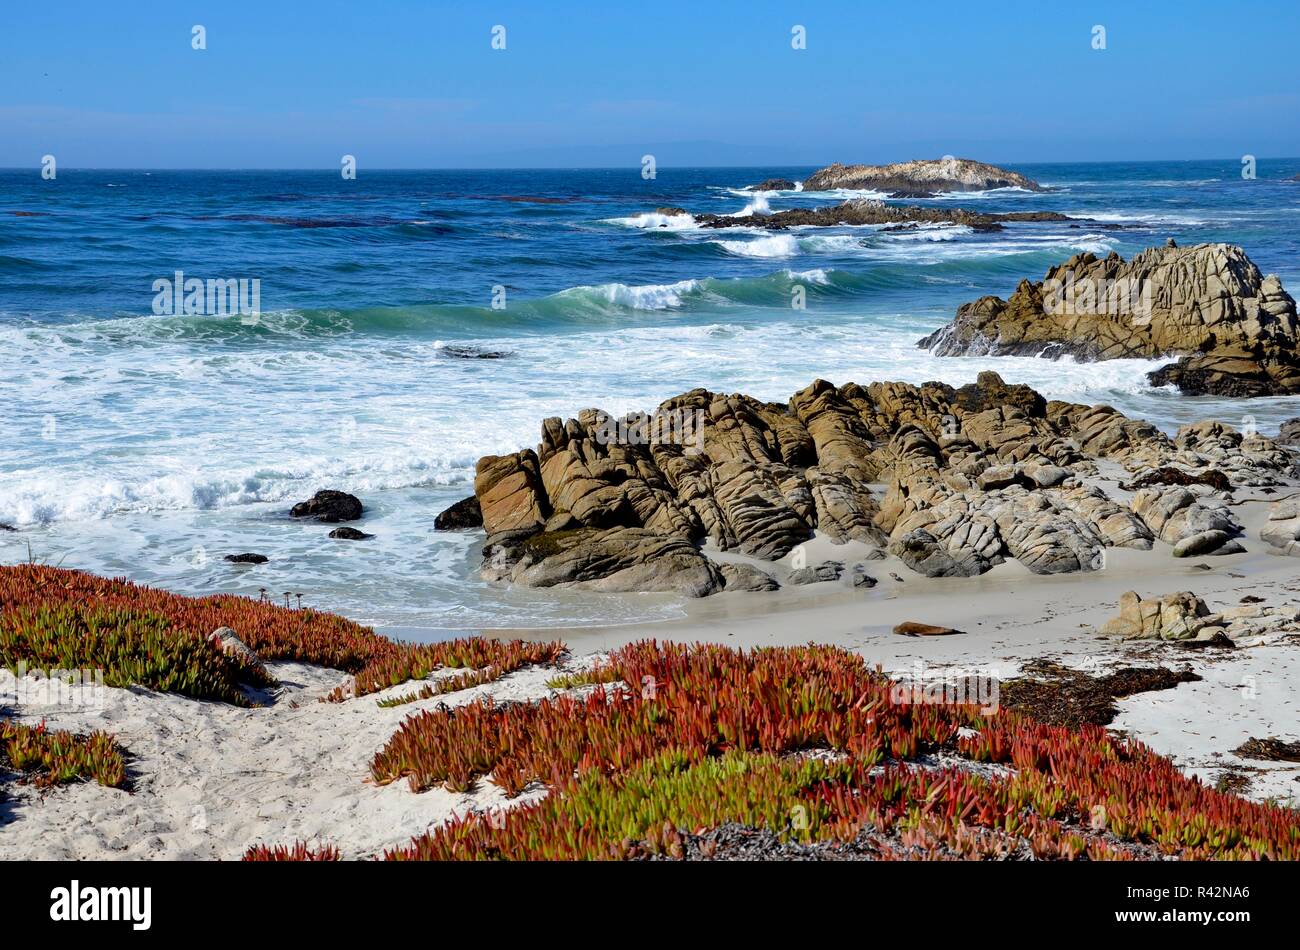 Monterey Peninsula cerca de Pebble Beach en California, costa vista hacia el océano Pacífico, costa rocosa y coloridas plantas sobre arena blanca, Septiembre Foto de stock